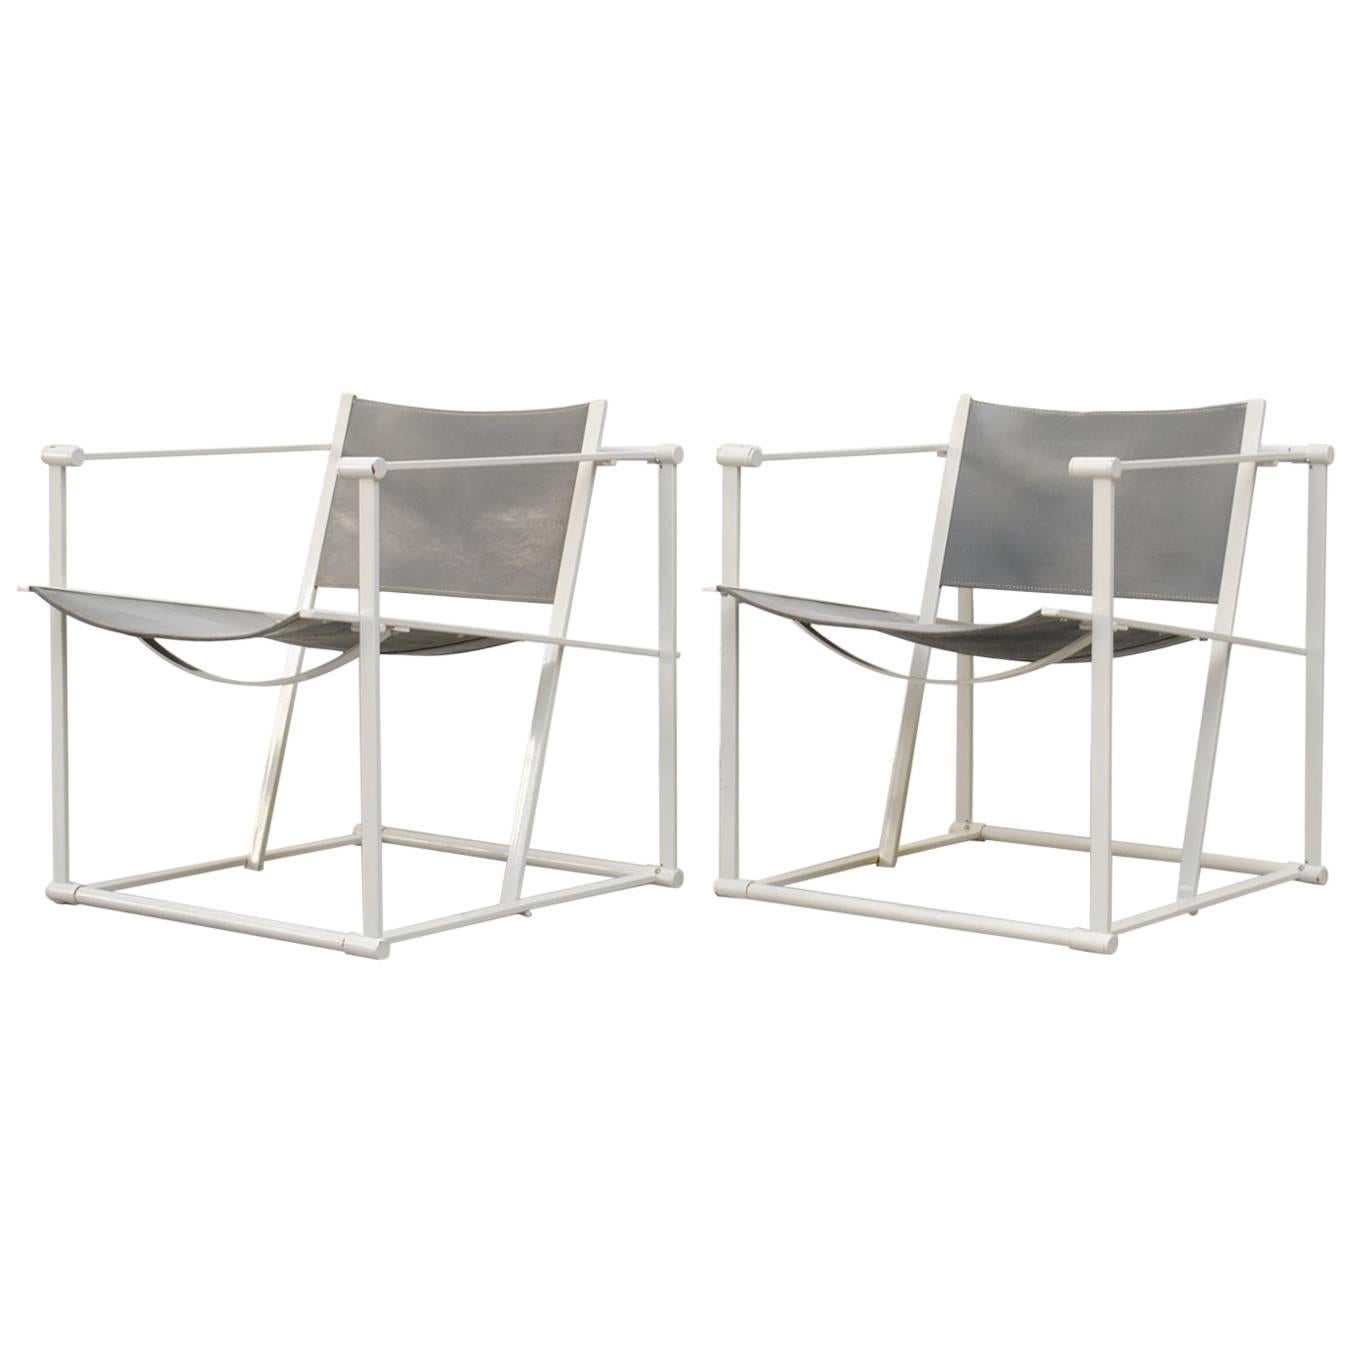 Pair of Cube Lounge Chair by Radboud Van Beekum for Pastoe